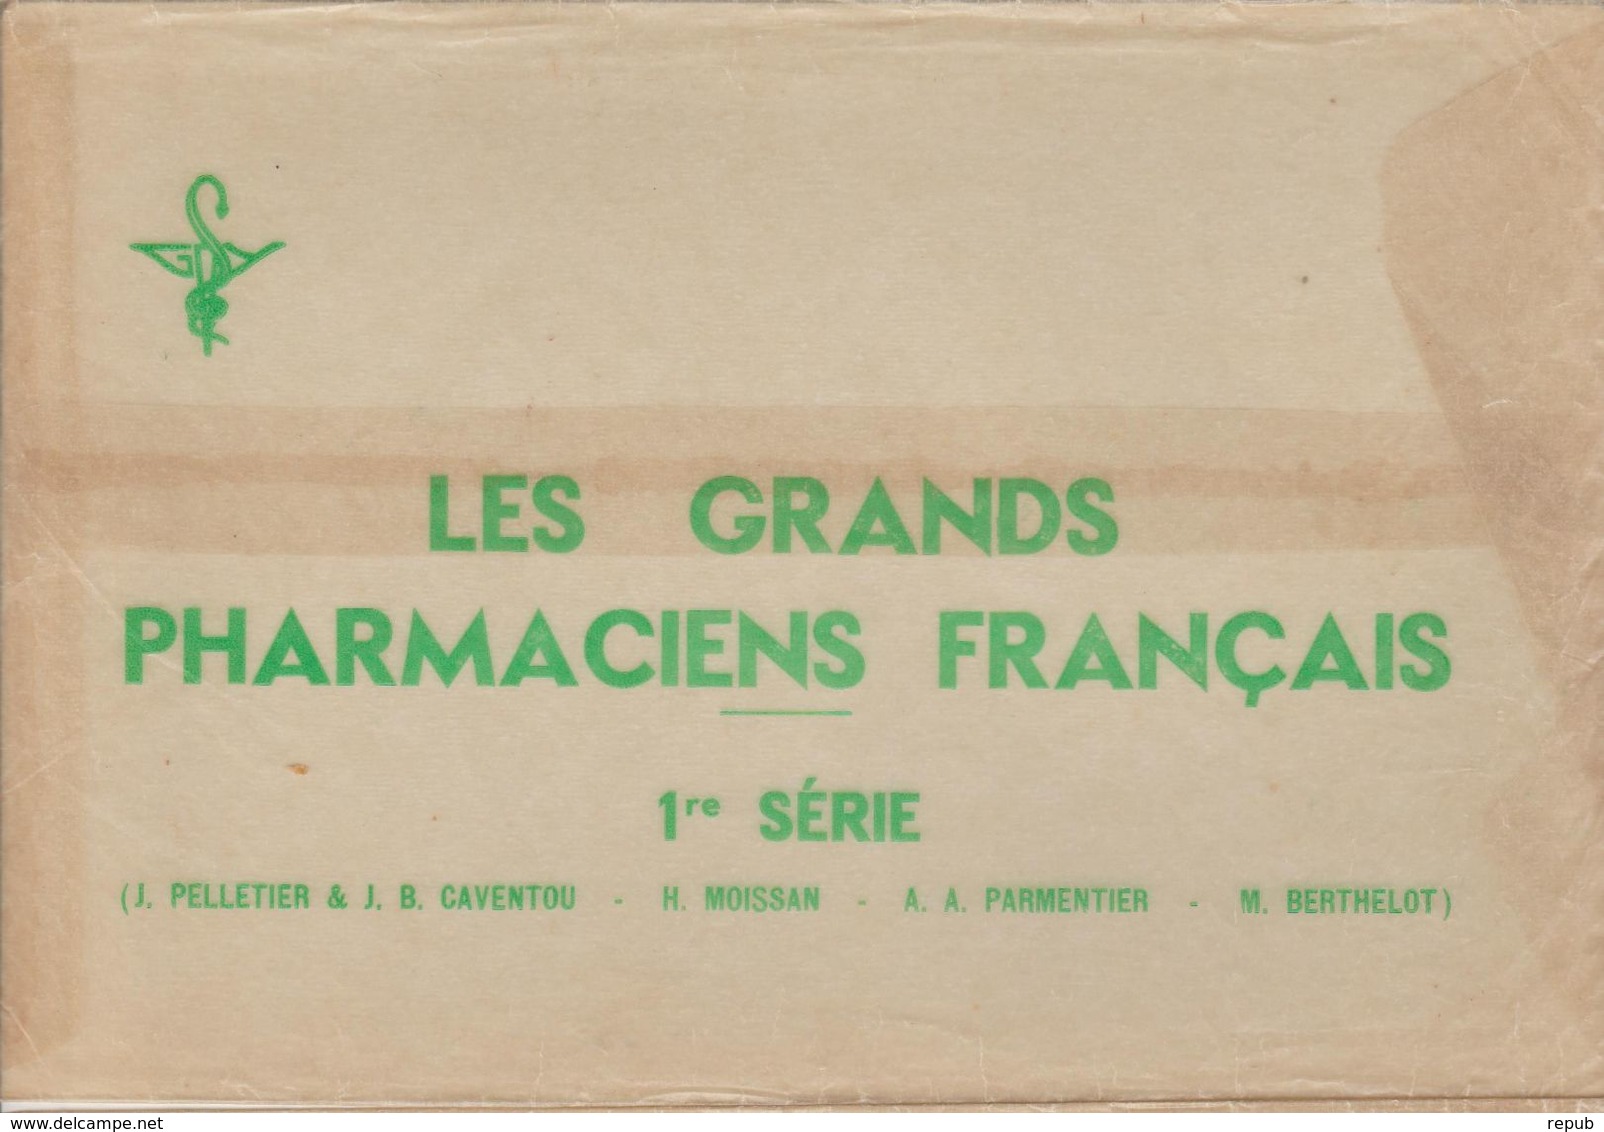 Lot De 4 Buvards Les Grands Pharmaciens Francais Dans Leur Emballage Cristal.Série 1 - P